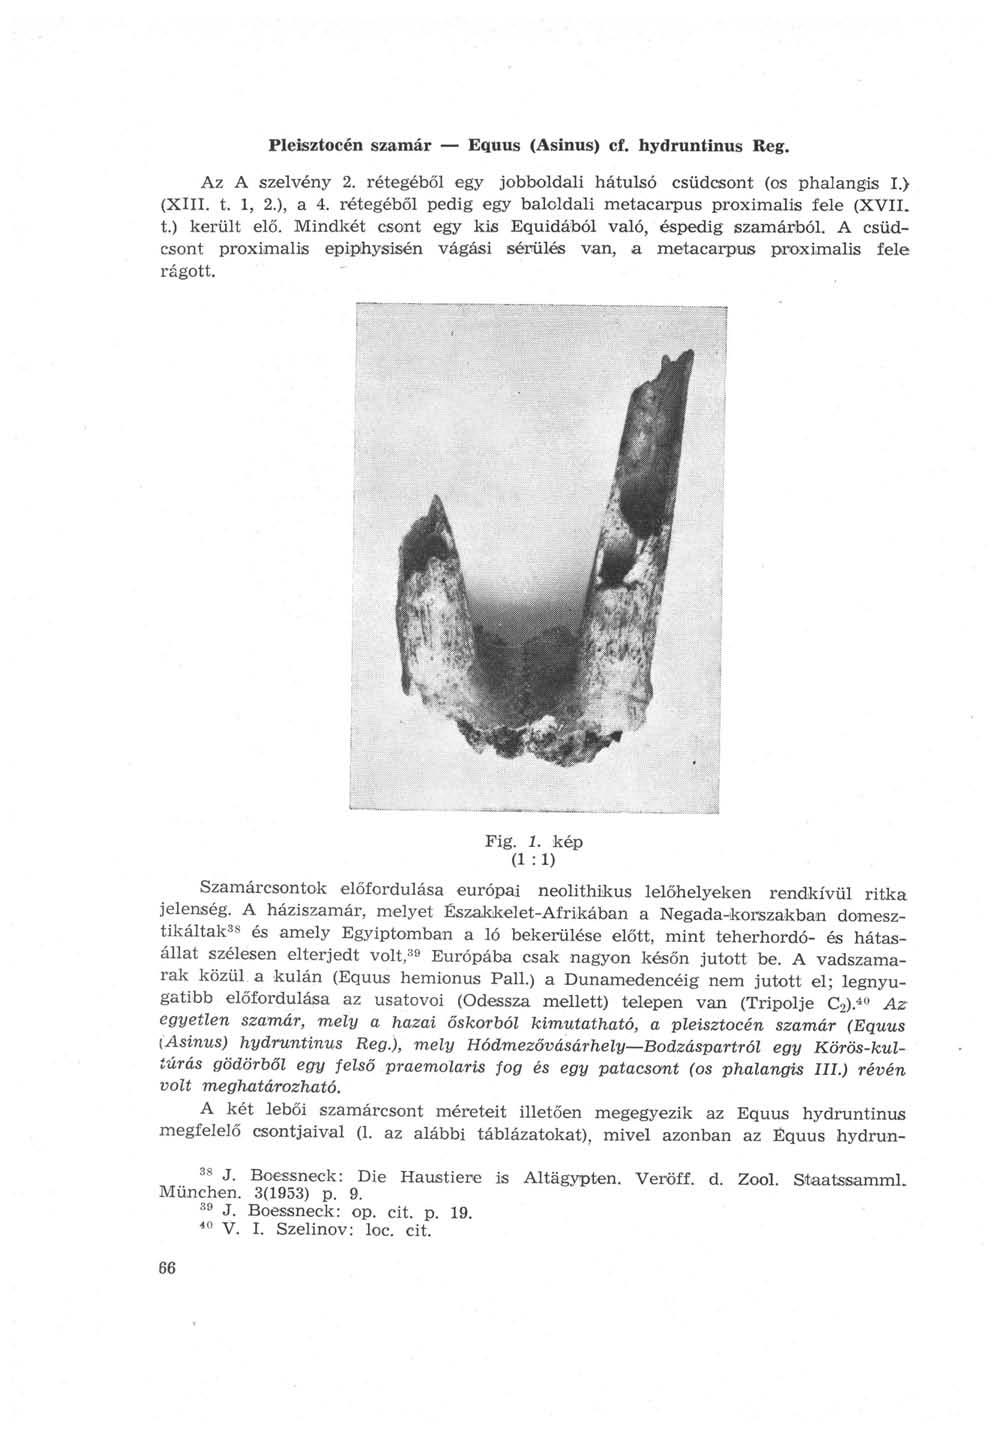 Pleisztocén szamár Equus (Asinus) cf. hydruntinus Reg. Az A szelvény 2. rétegéből egy jobboldali hátulsó csüdcsont (os phalangis I.) (XIII. t. 1, 2.), a 4.